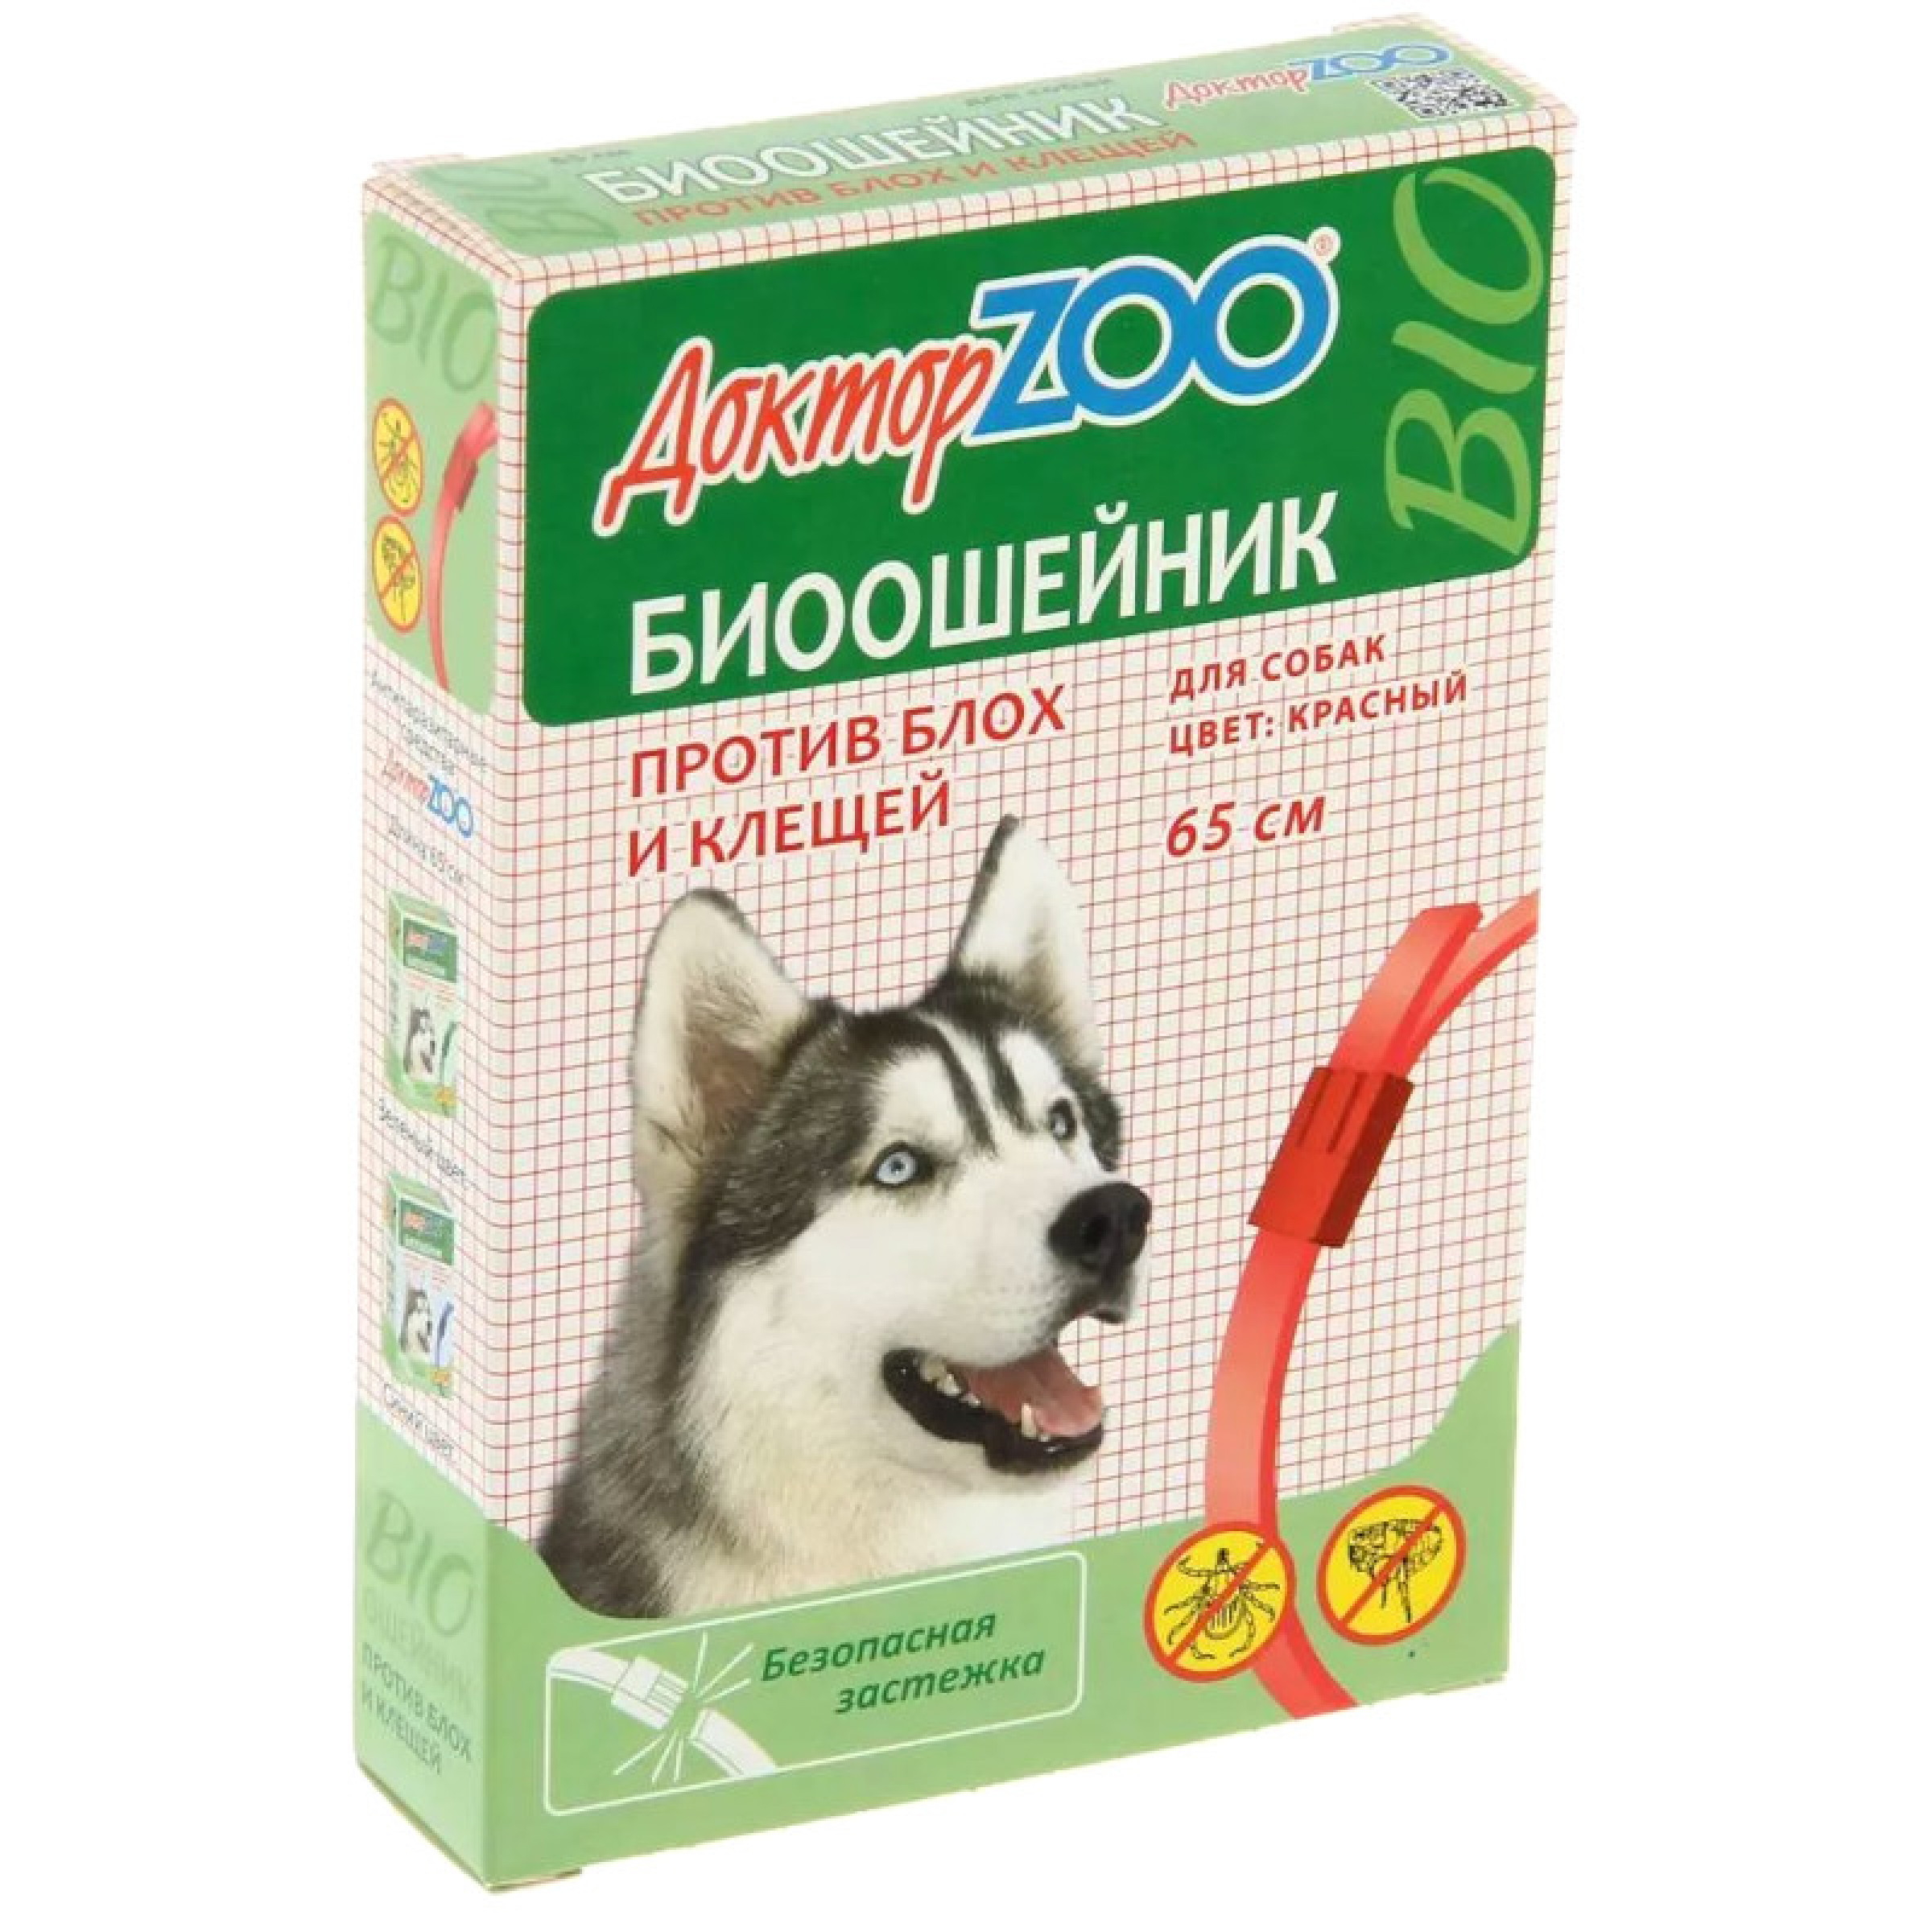 БИОошейник Доктор Zoo репеллентный для собак красный, 65 см